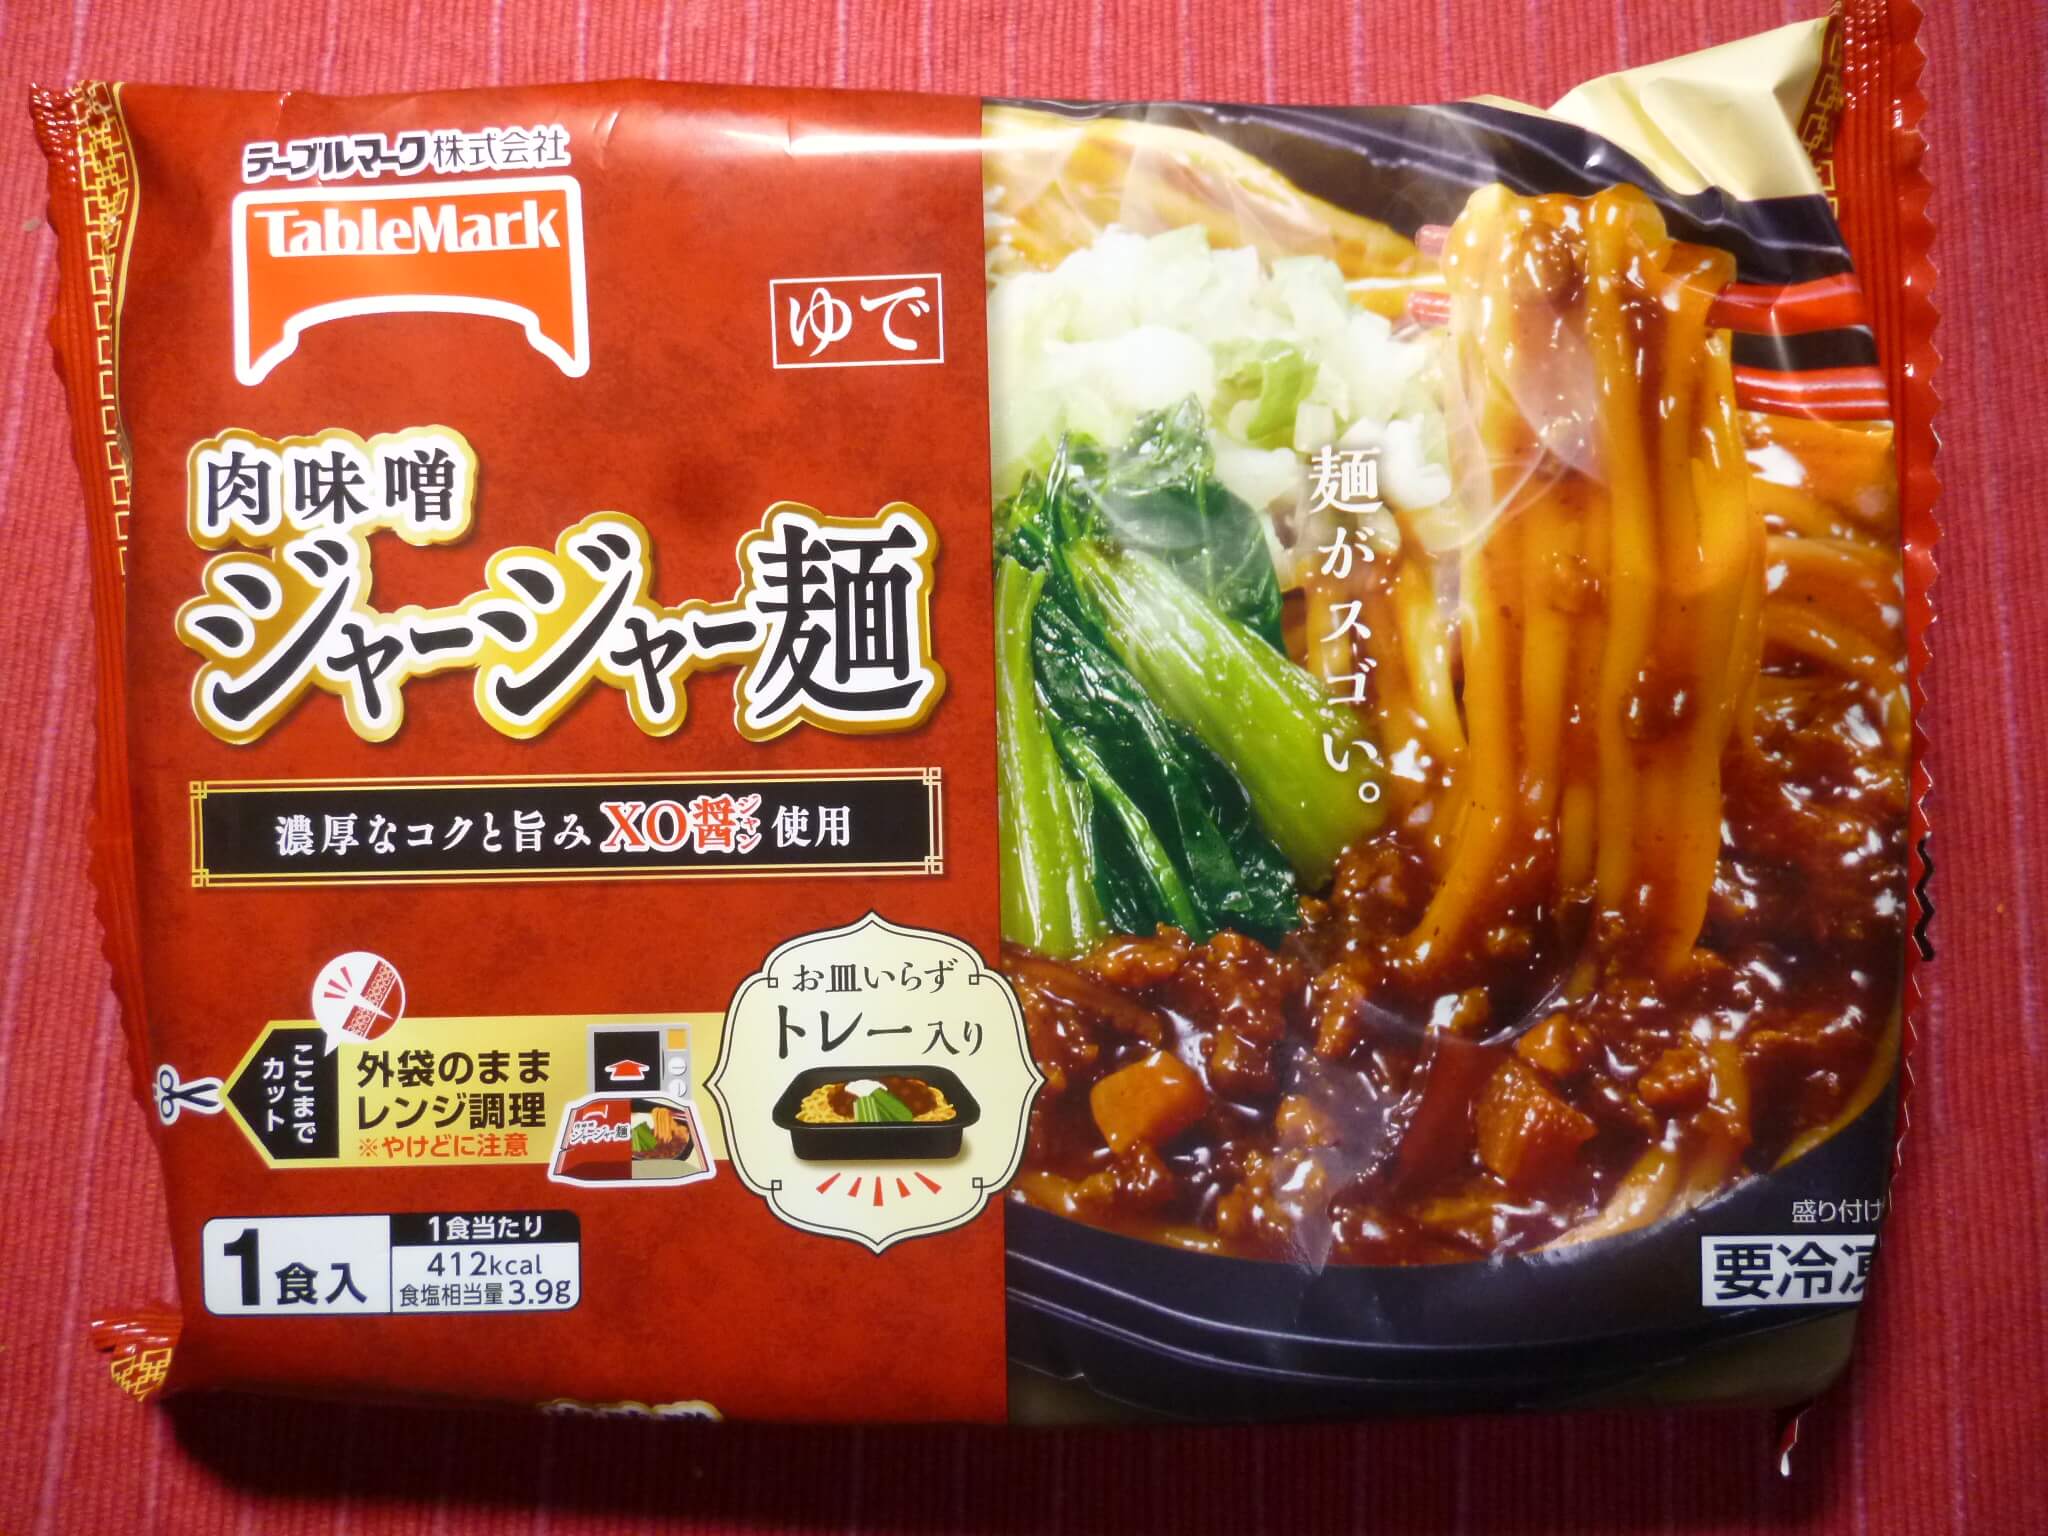 テーブルマークの冷凍食品 肉味噌ジャージャー麺 を食べた感想 おすすめ冷凍食品情報サイト